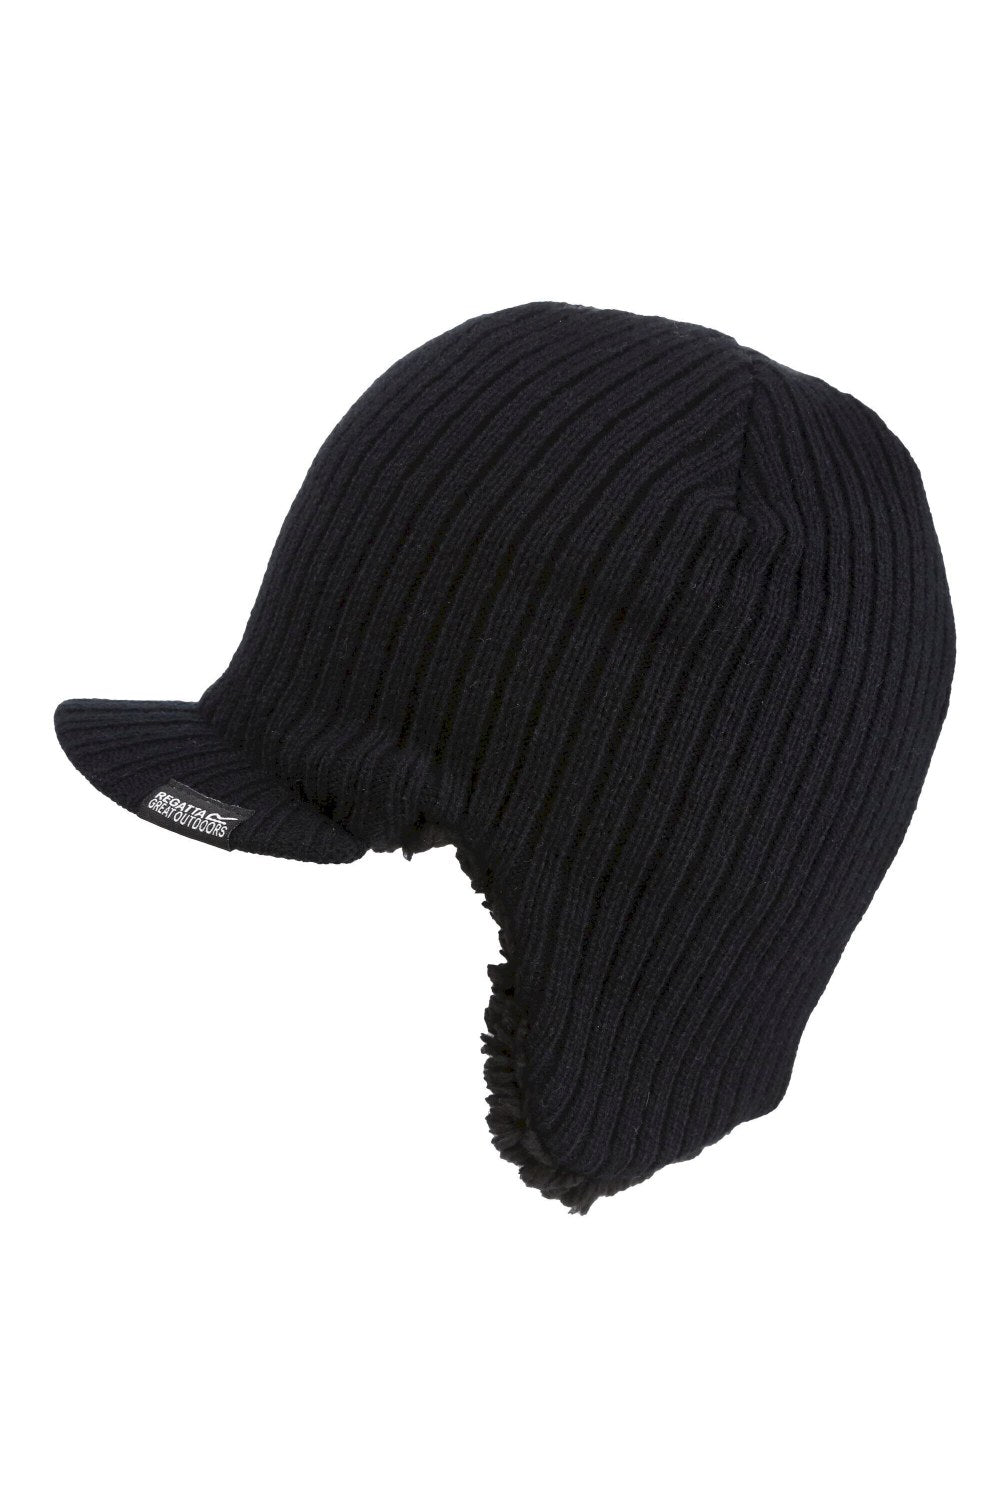 Regatta Mens Anvil Knitted Winter Hat